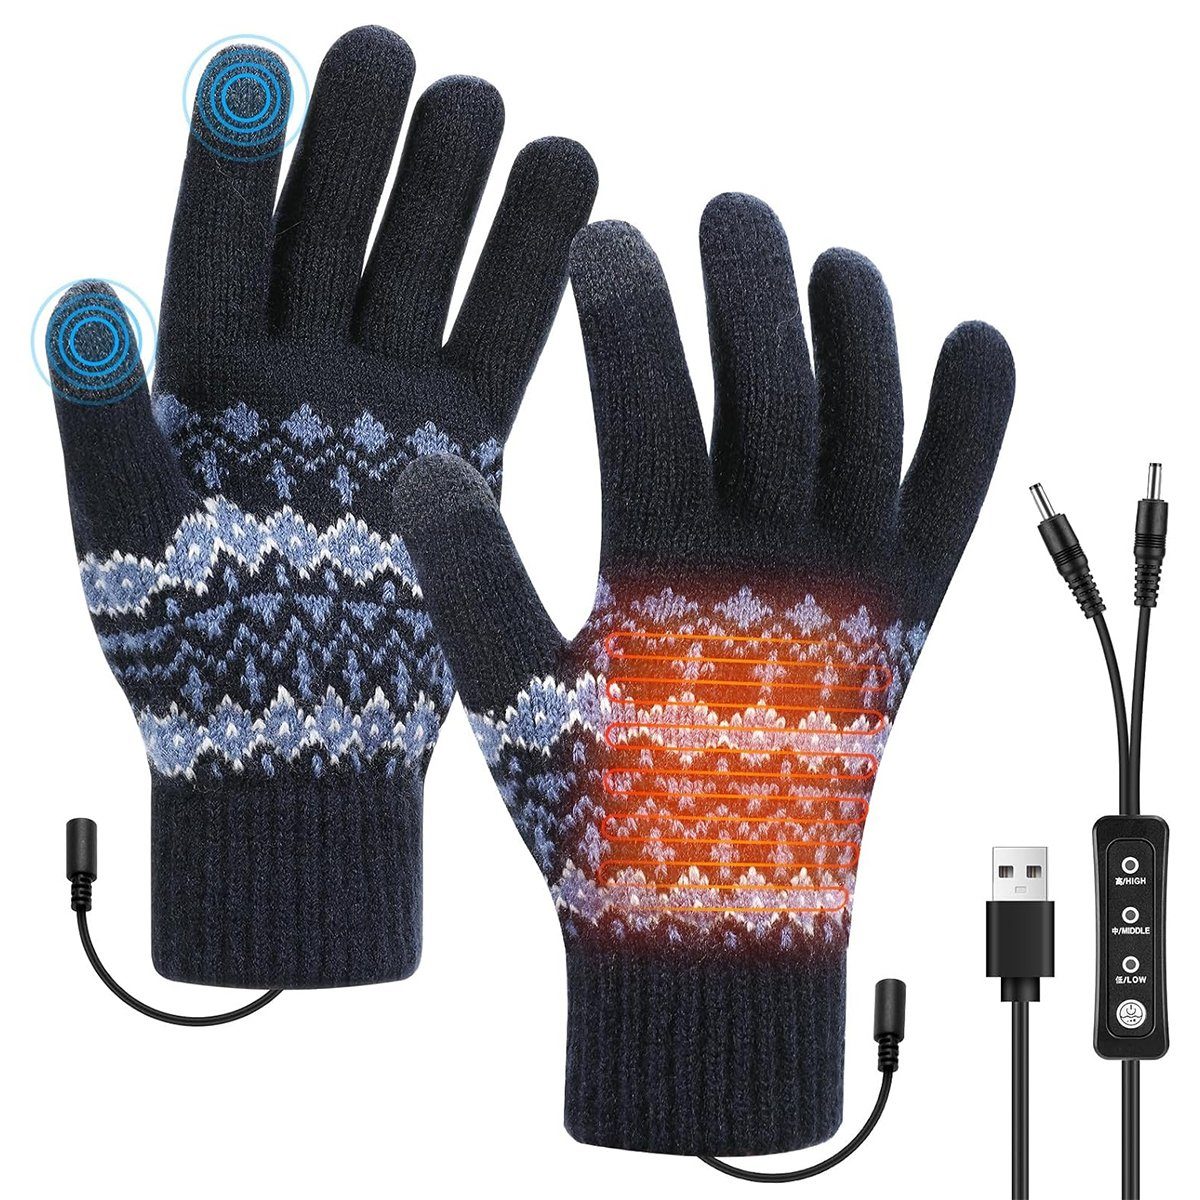 Welikera Winter-Arbeitshandschuhe Beheizbare Handschuhe mit Schalter,3-stufige Temperatureinstellung Blau